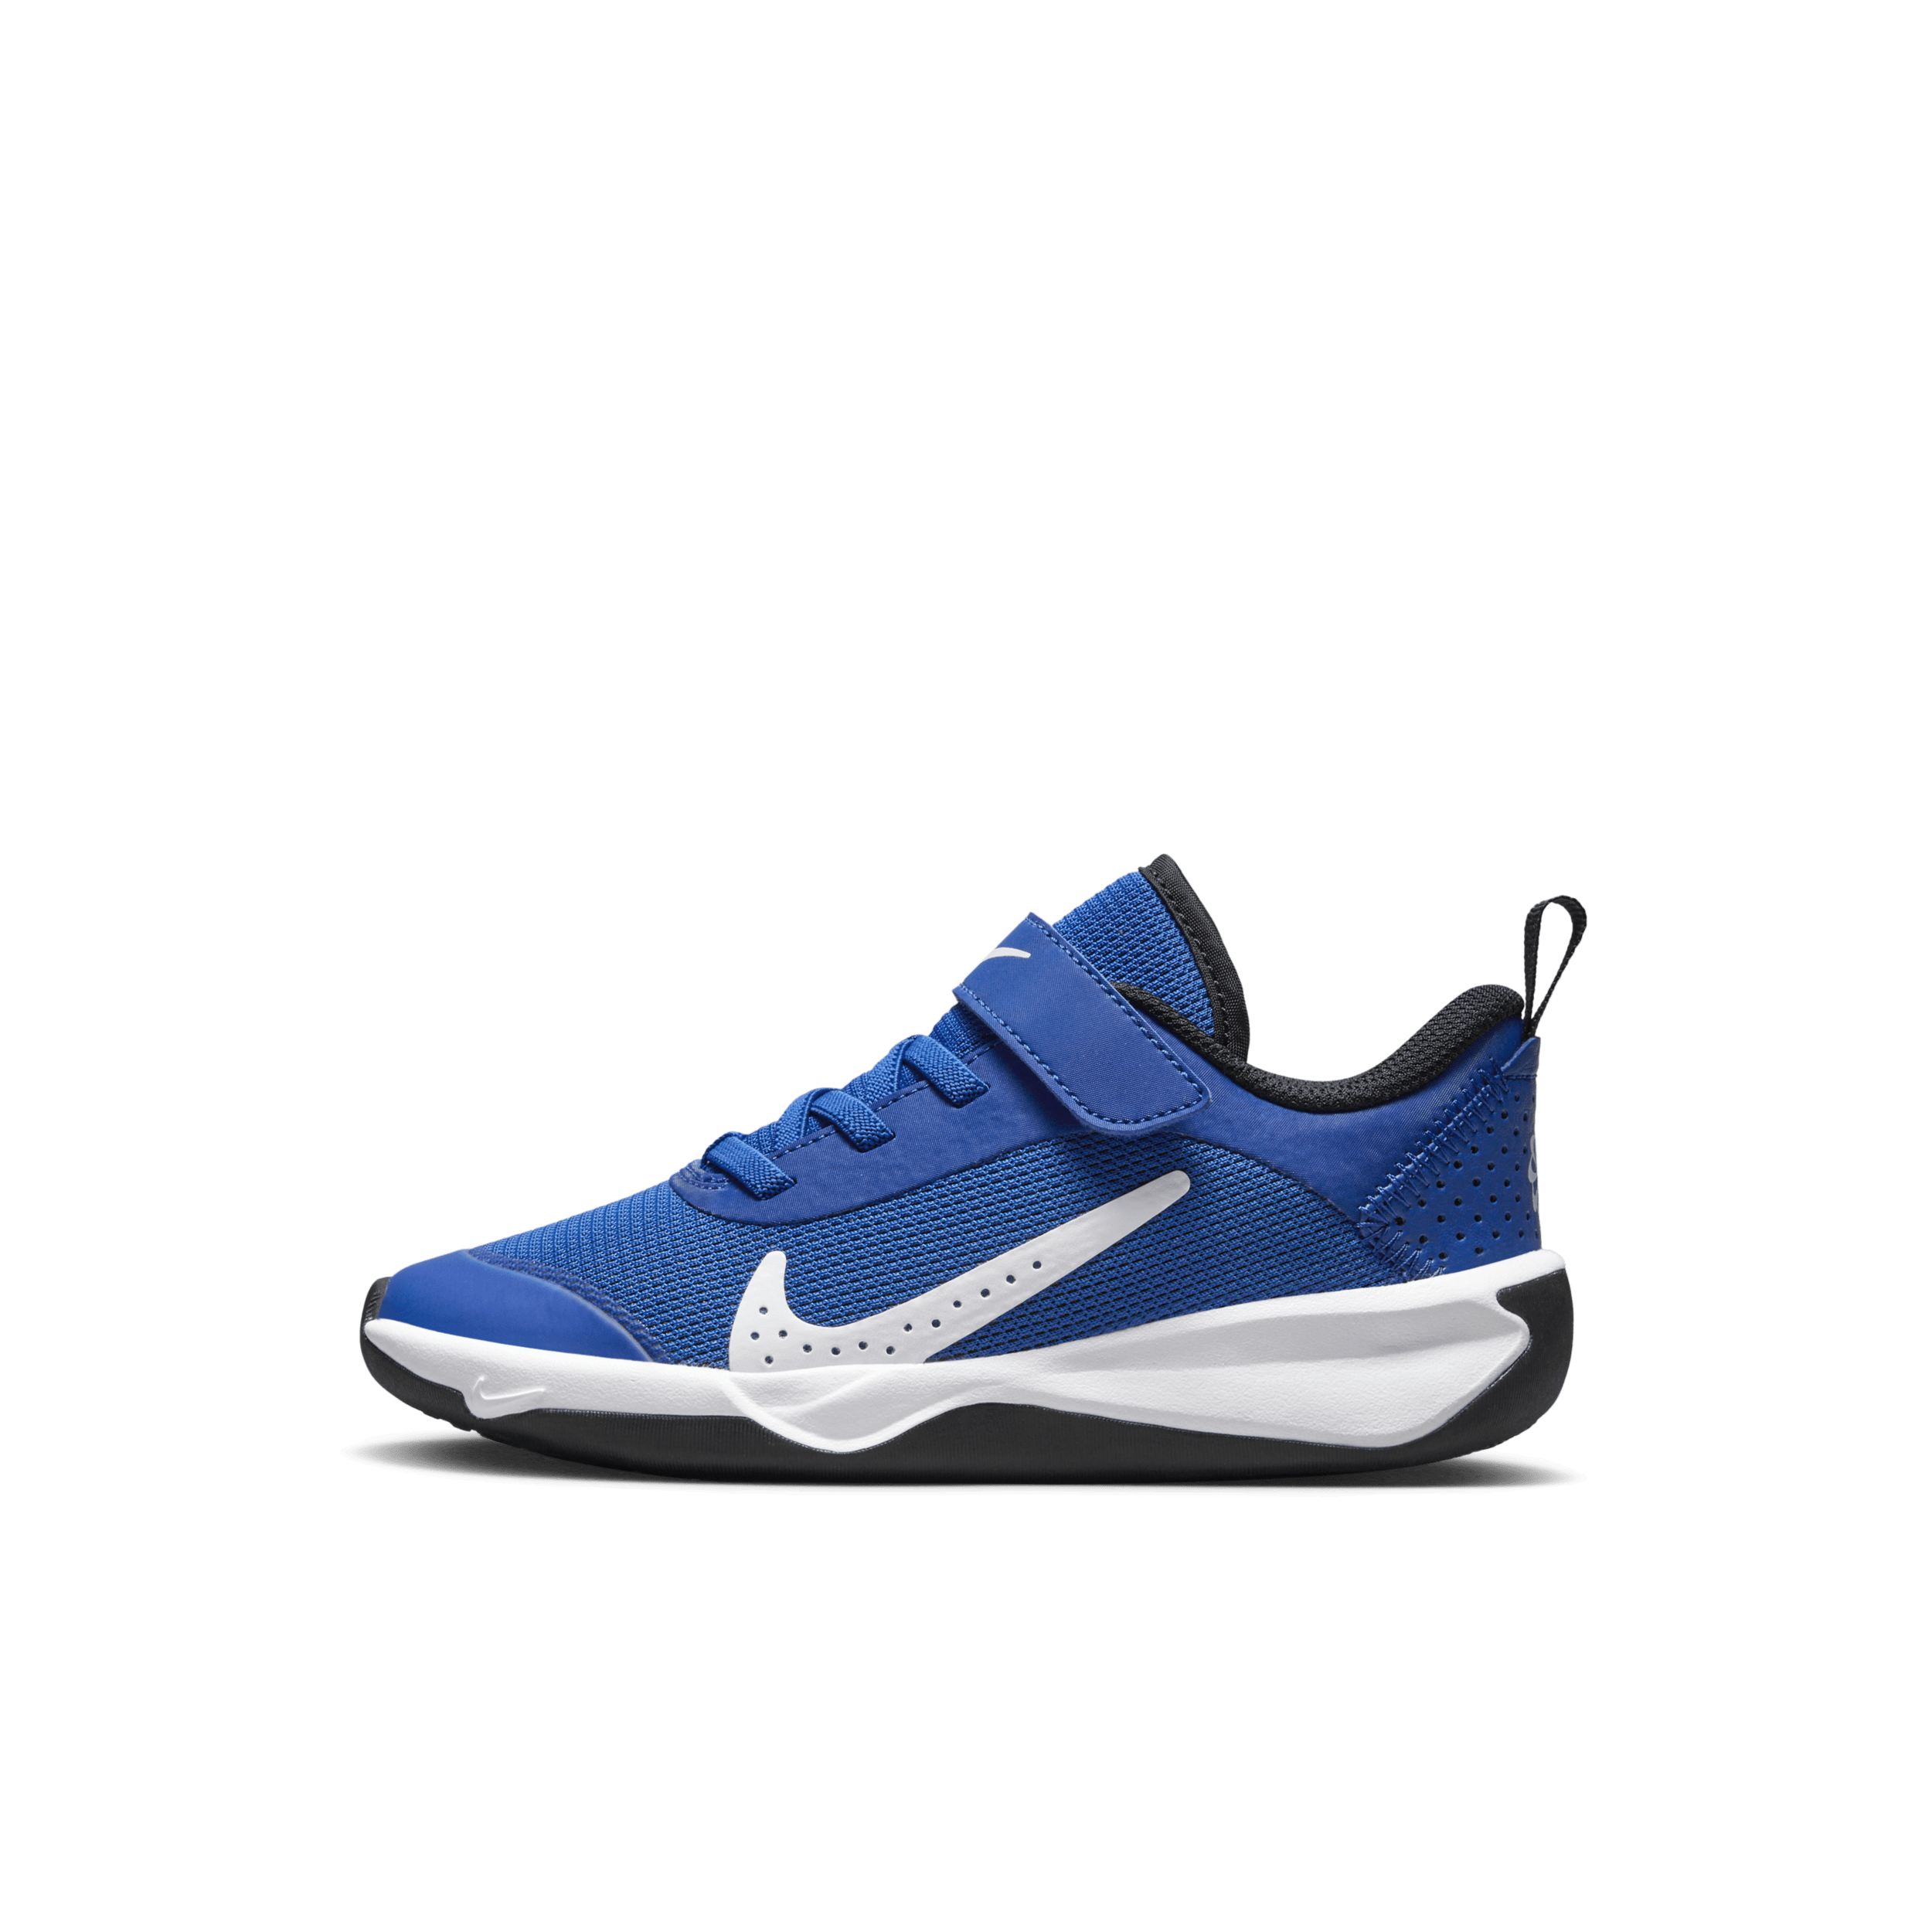 Nike Omni Multi-Court Kleuterschoenen - Blauw